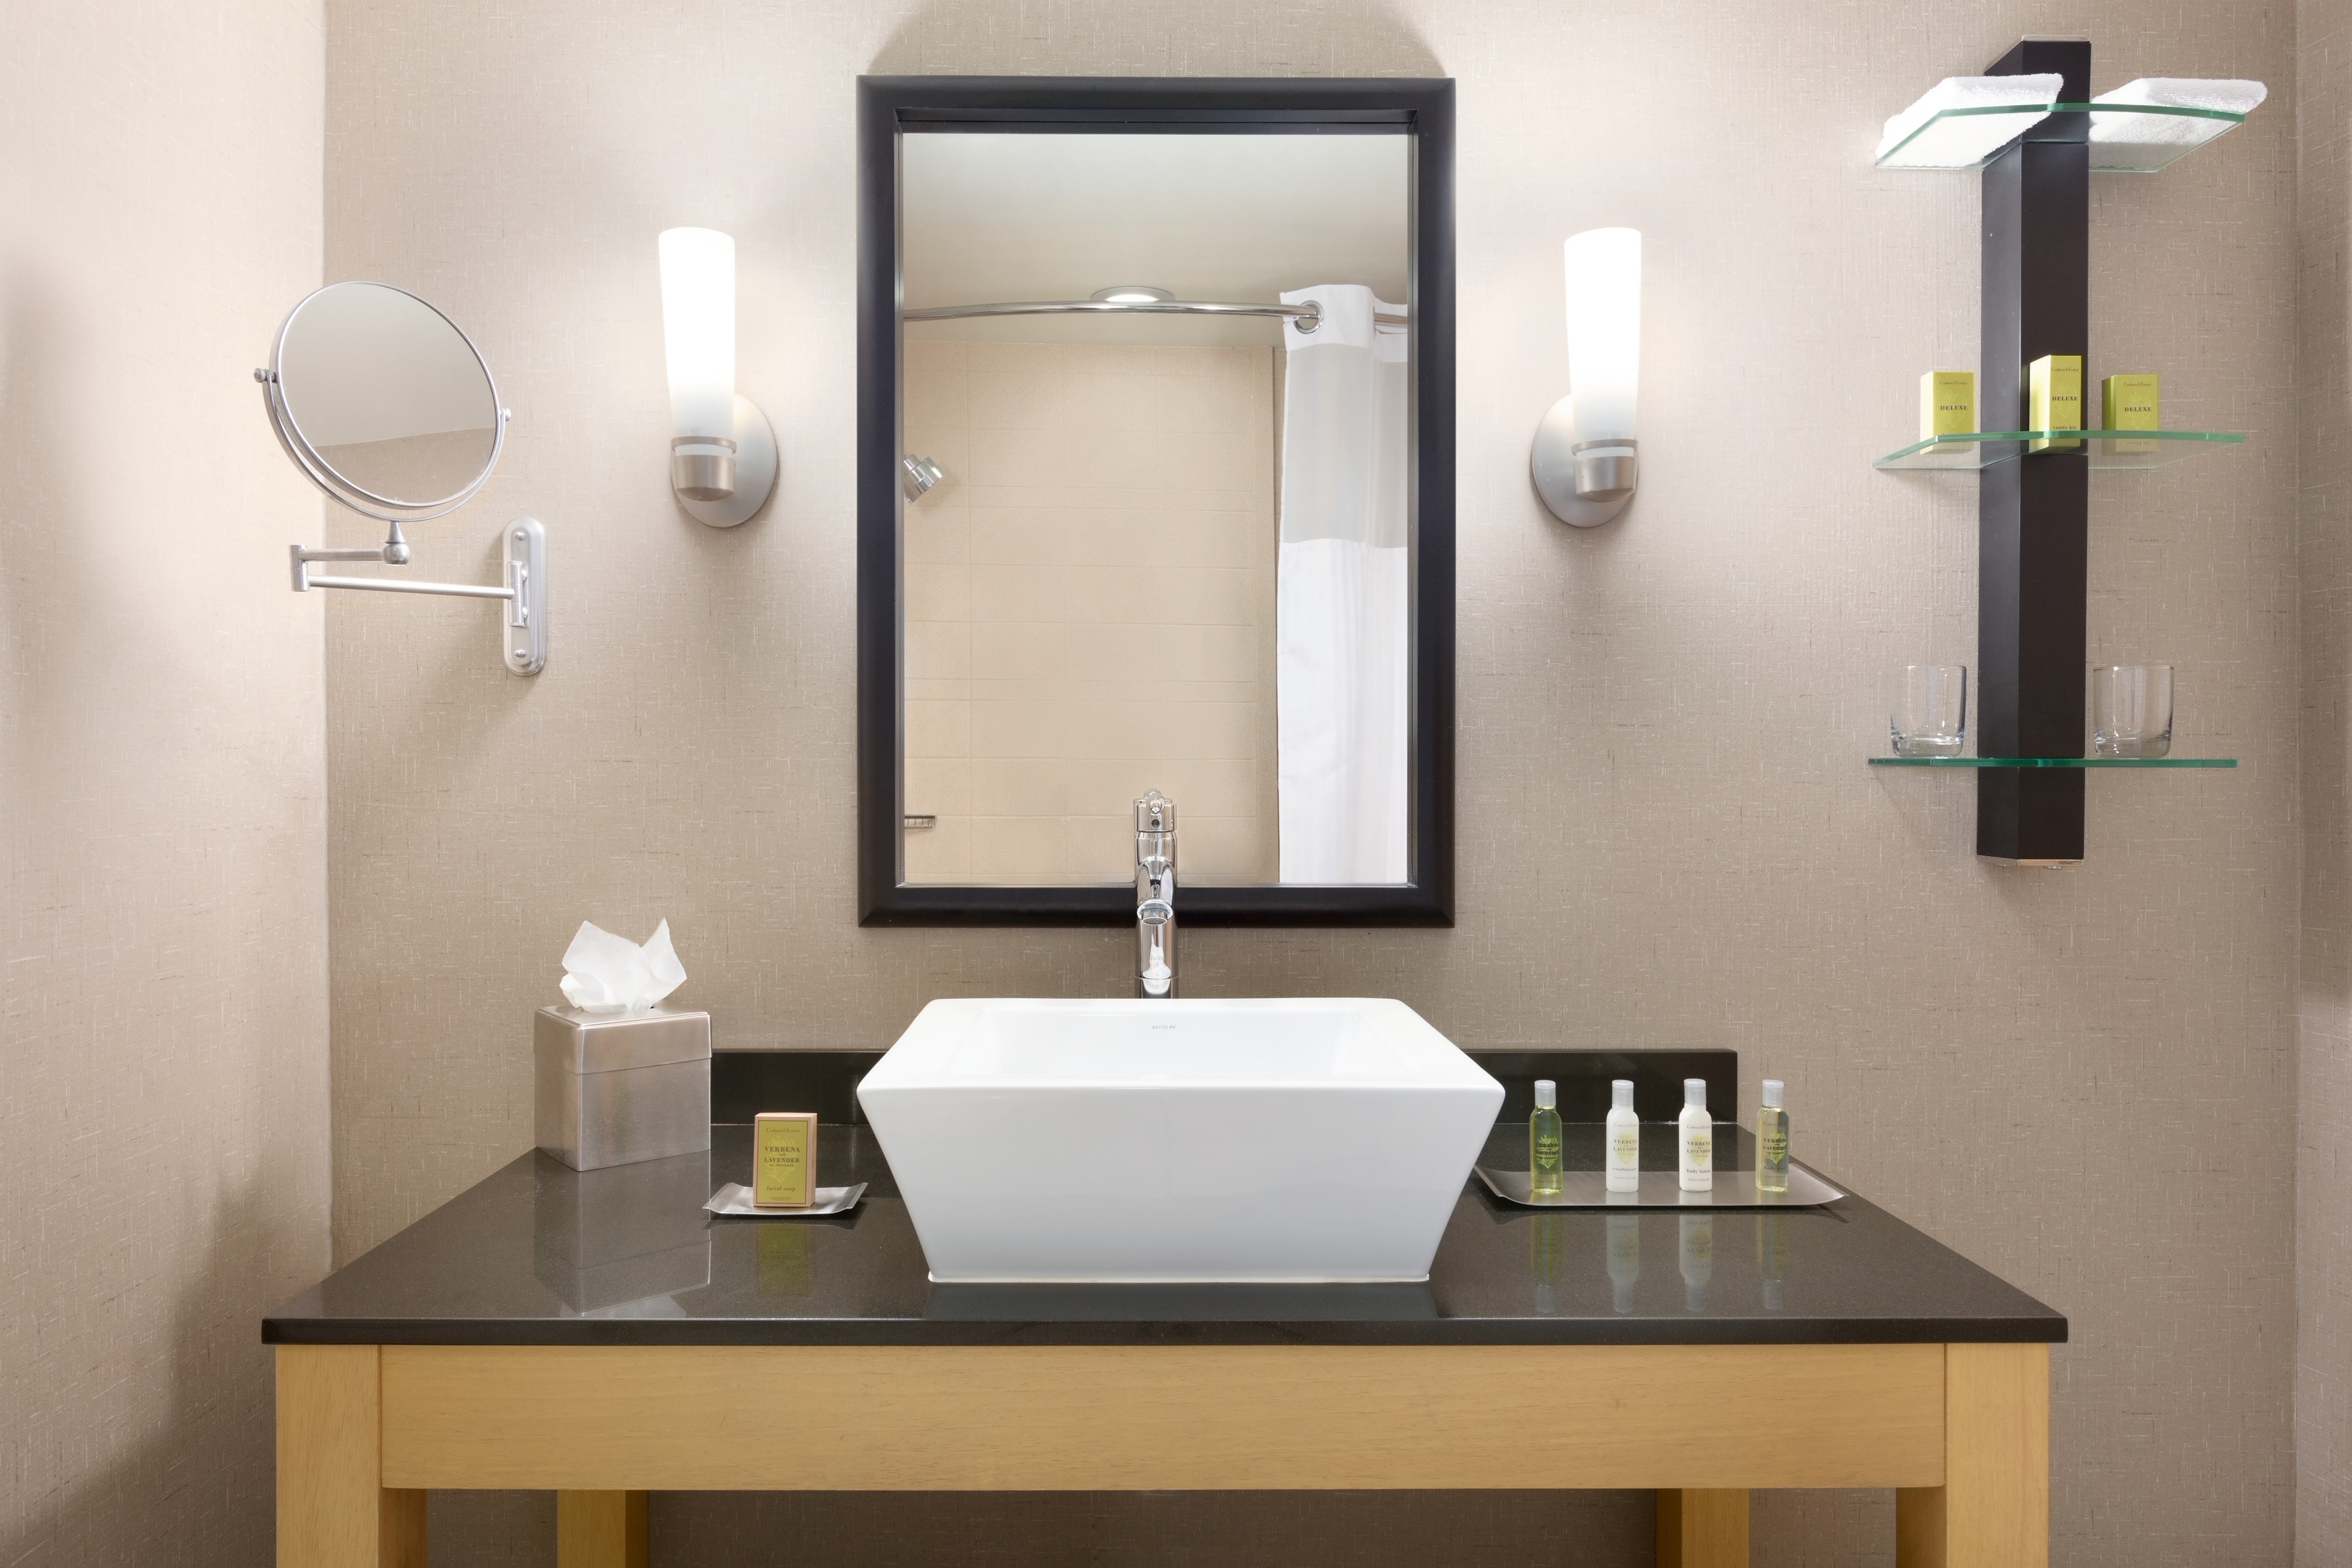 Shower Curtain Reflected in Vanity Mirror, Sink, Toiletries, and Amenities in Standard Bathroom